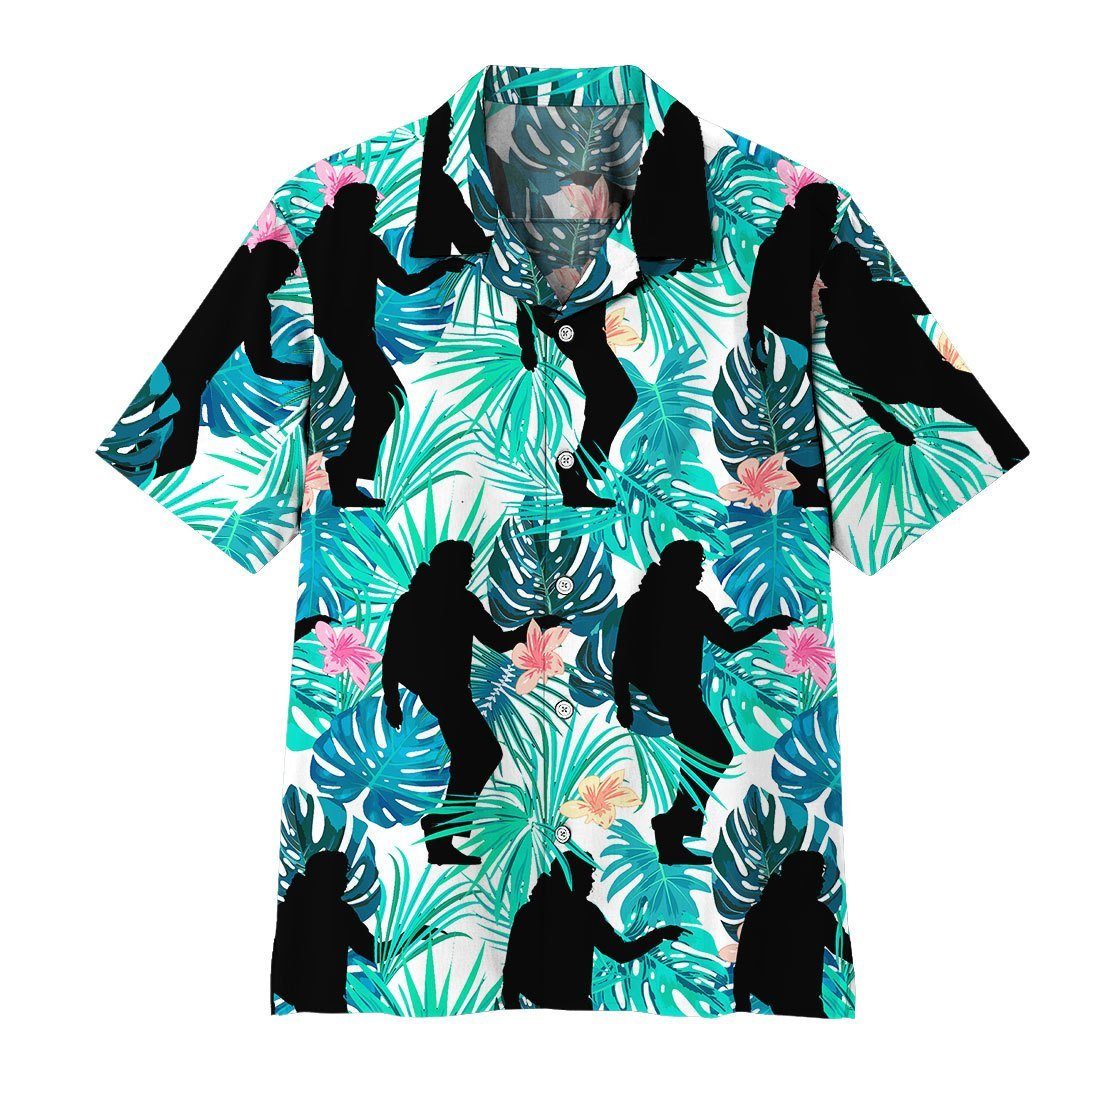 Gearhuman 3D Michael Jackson Hawaii Shirt Short Sleeve Shirt / XL